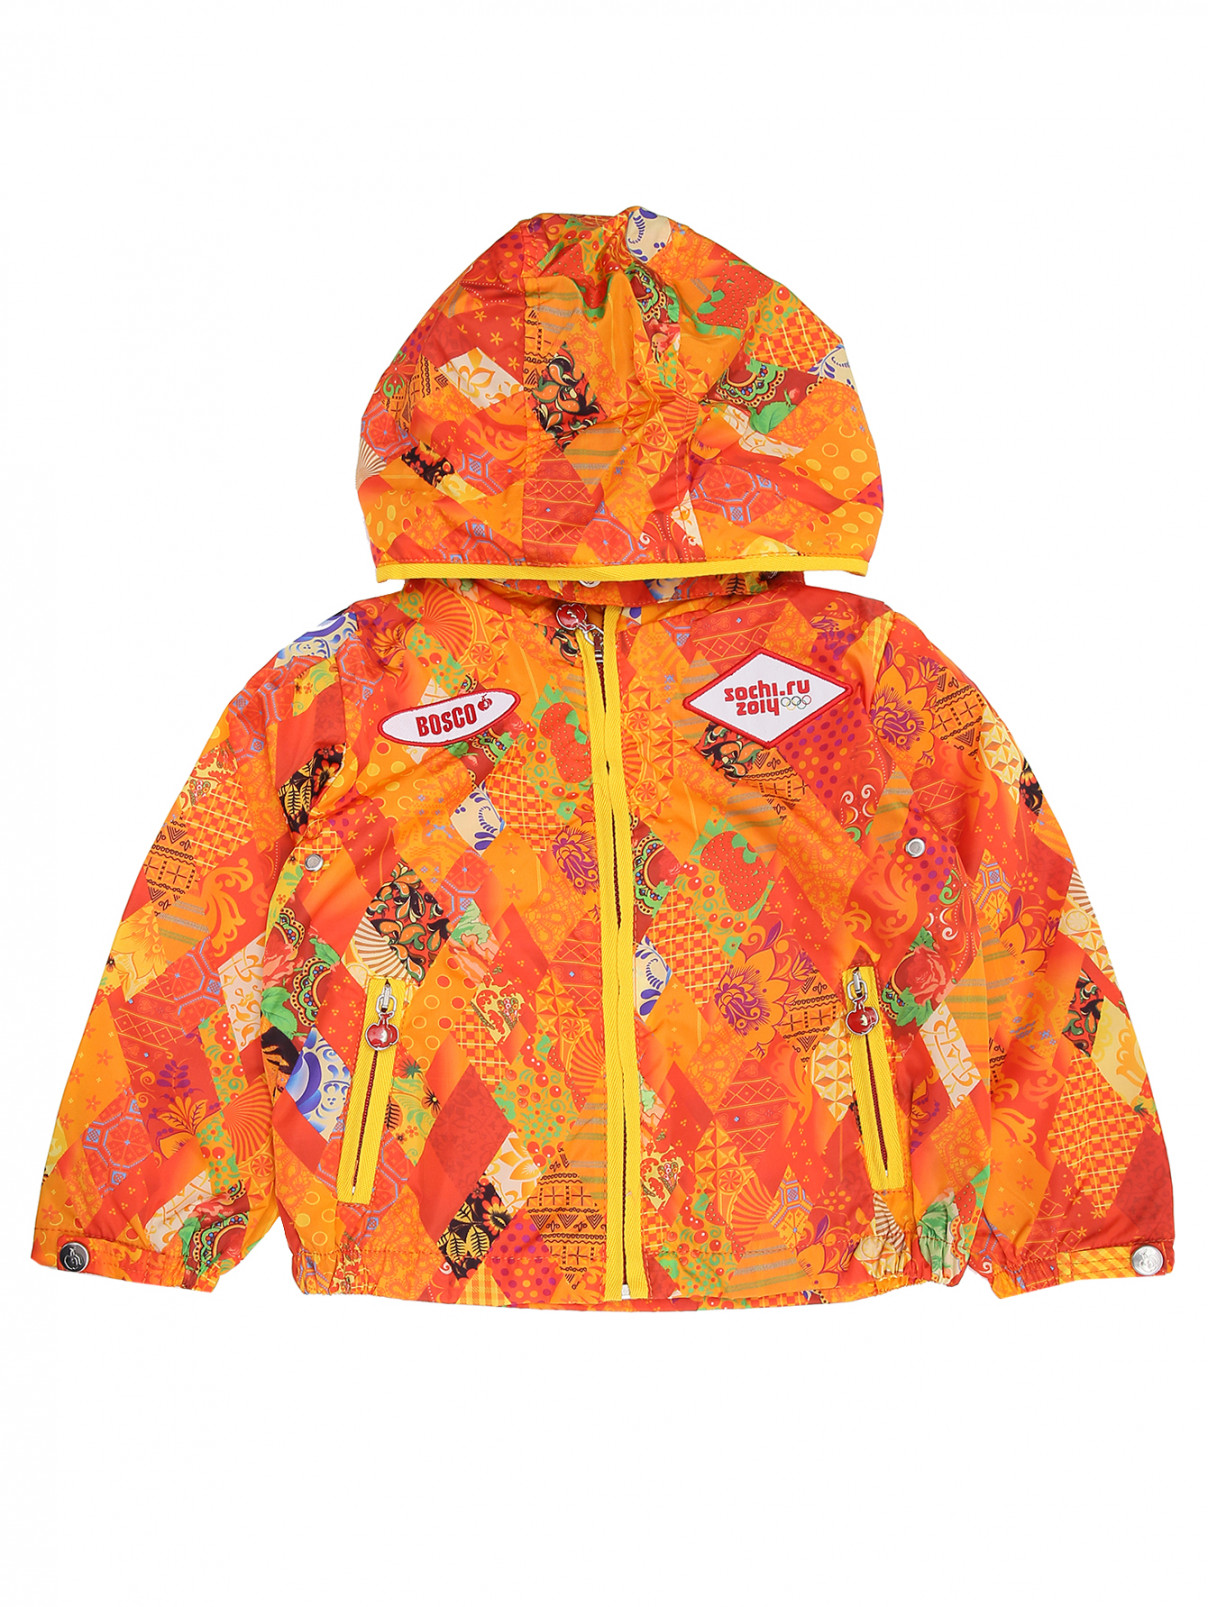 Куртка с узором и аппликацией Sochi 2014  –  Общий вид  – Цвет:  Узор